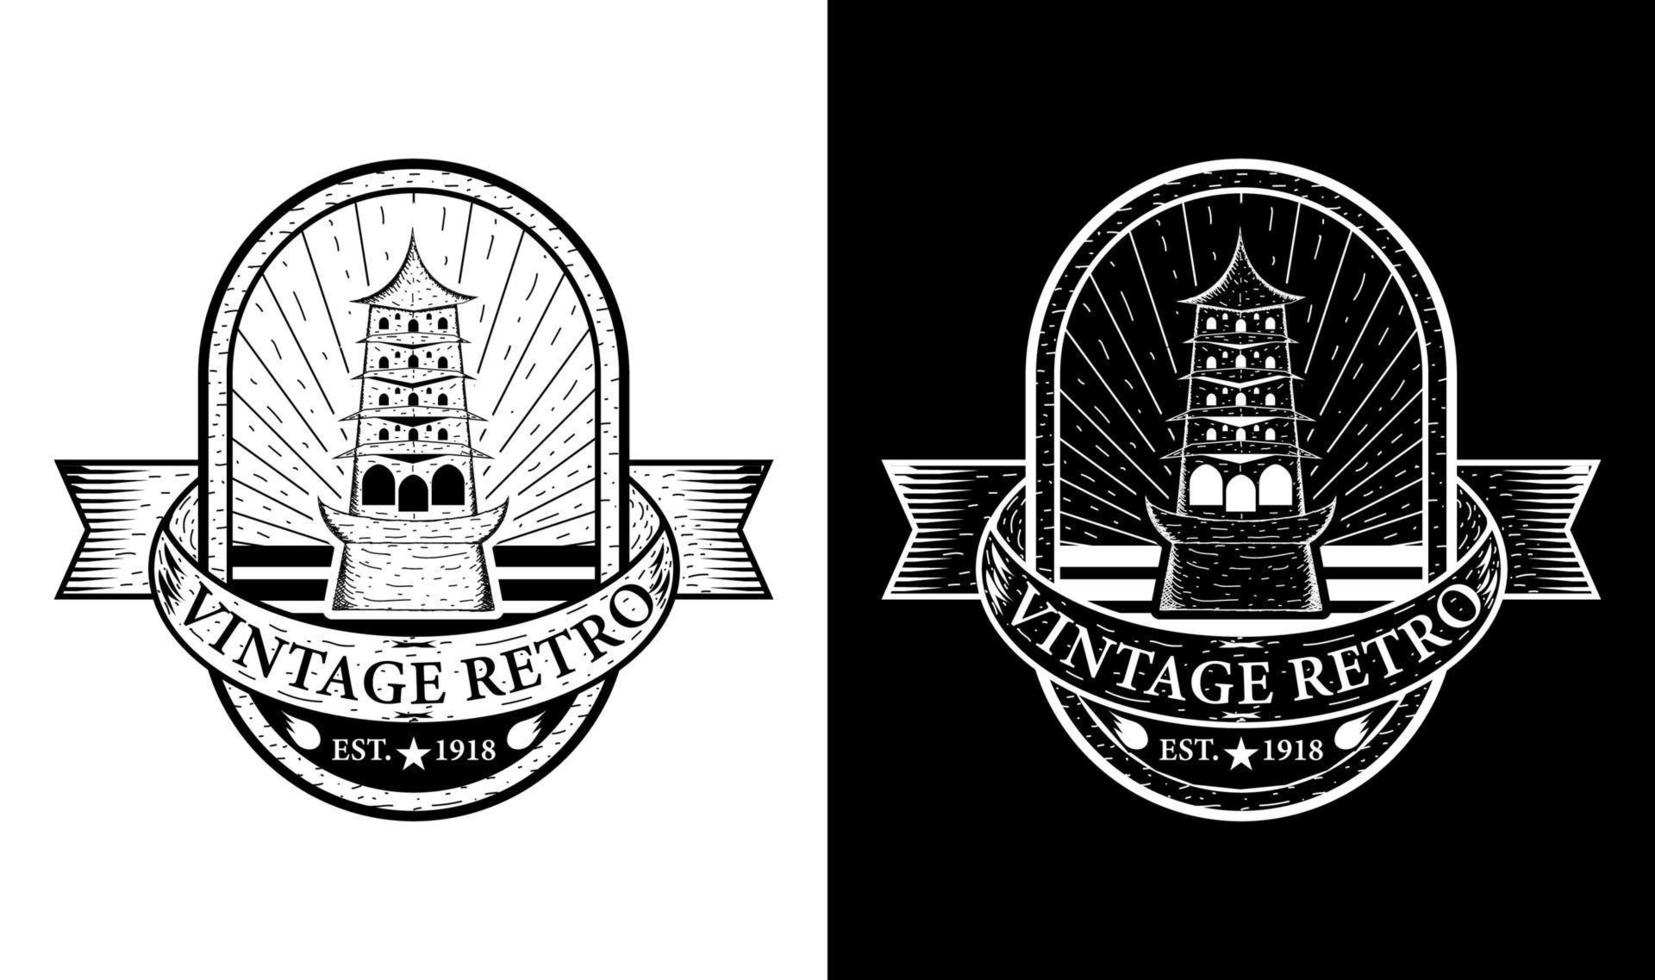 Temple Vintage Retro Badge Label Emblem Logo design inspiration vector